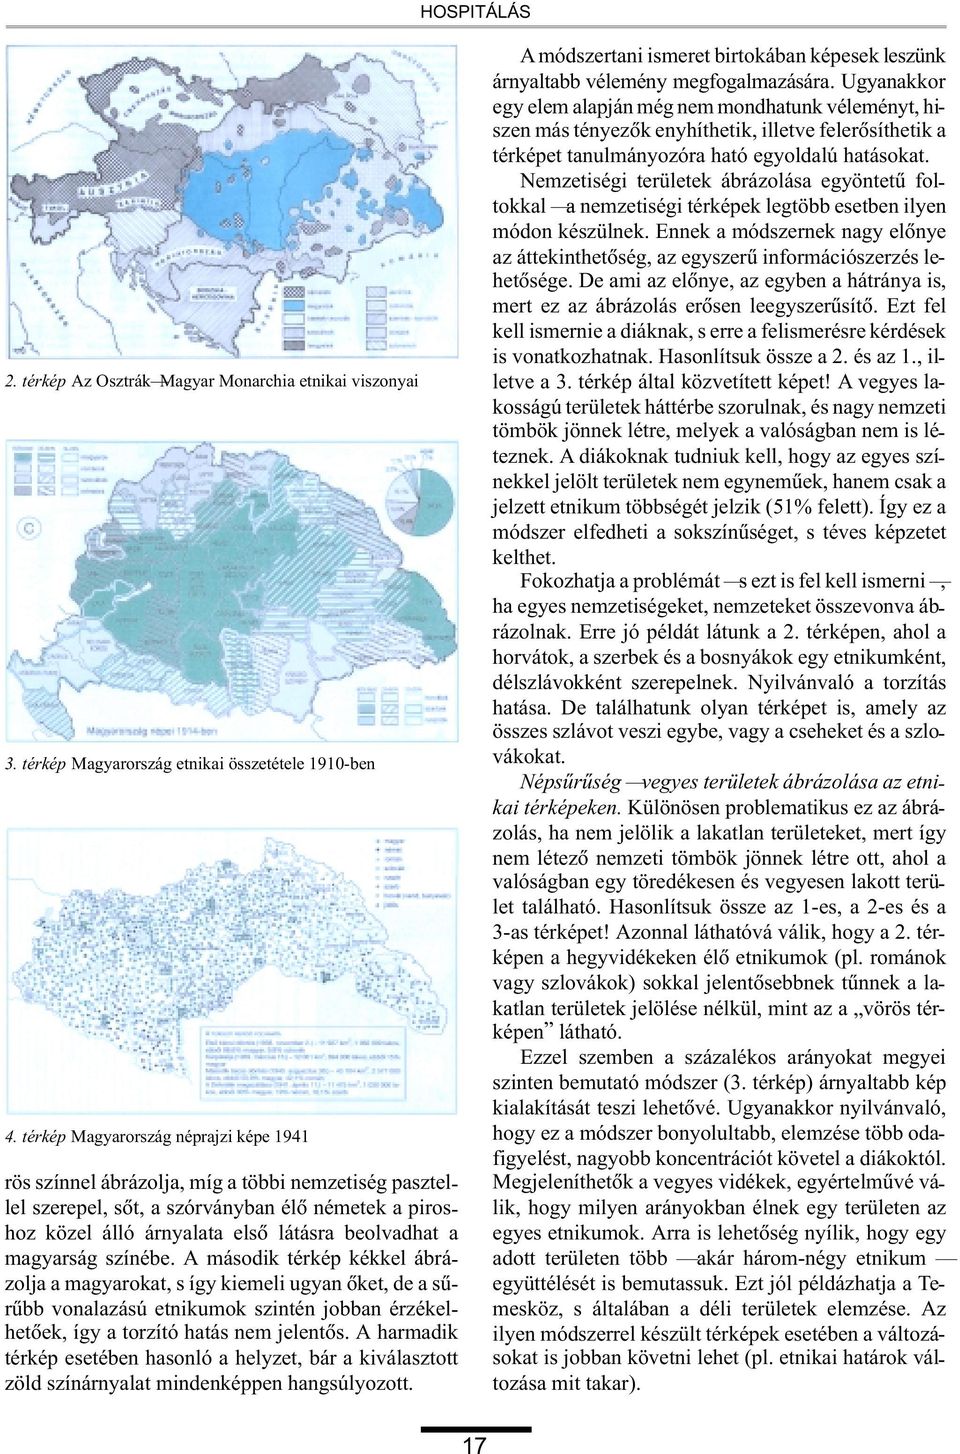 magyarság színébe. A második térkép kékkel ábrázolja a magyarokat, s így kiemeli ugyan õket, de a sûrûbb vonalazású etnikumok szintén jobban érzékelhetõek, így a torzító hatás nem jelentõs.